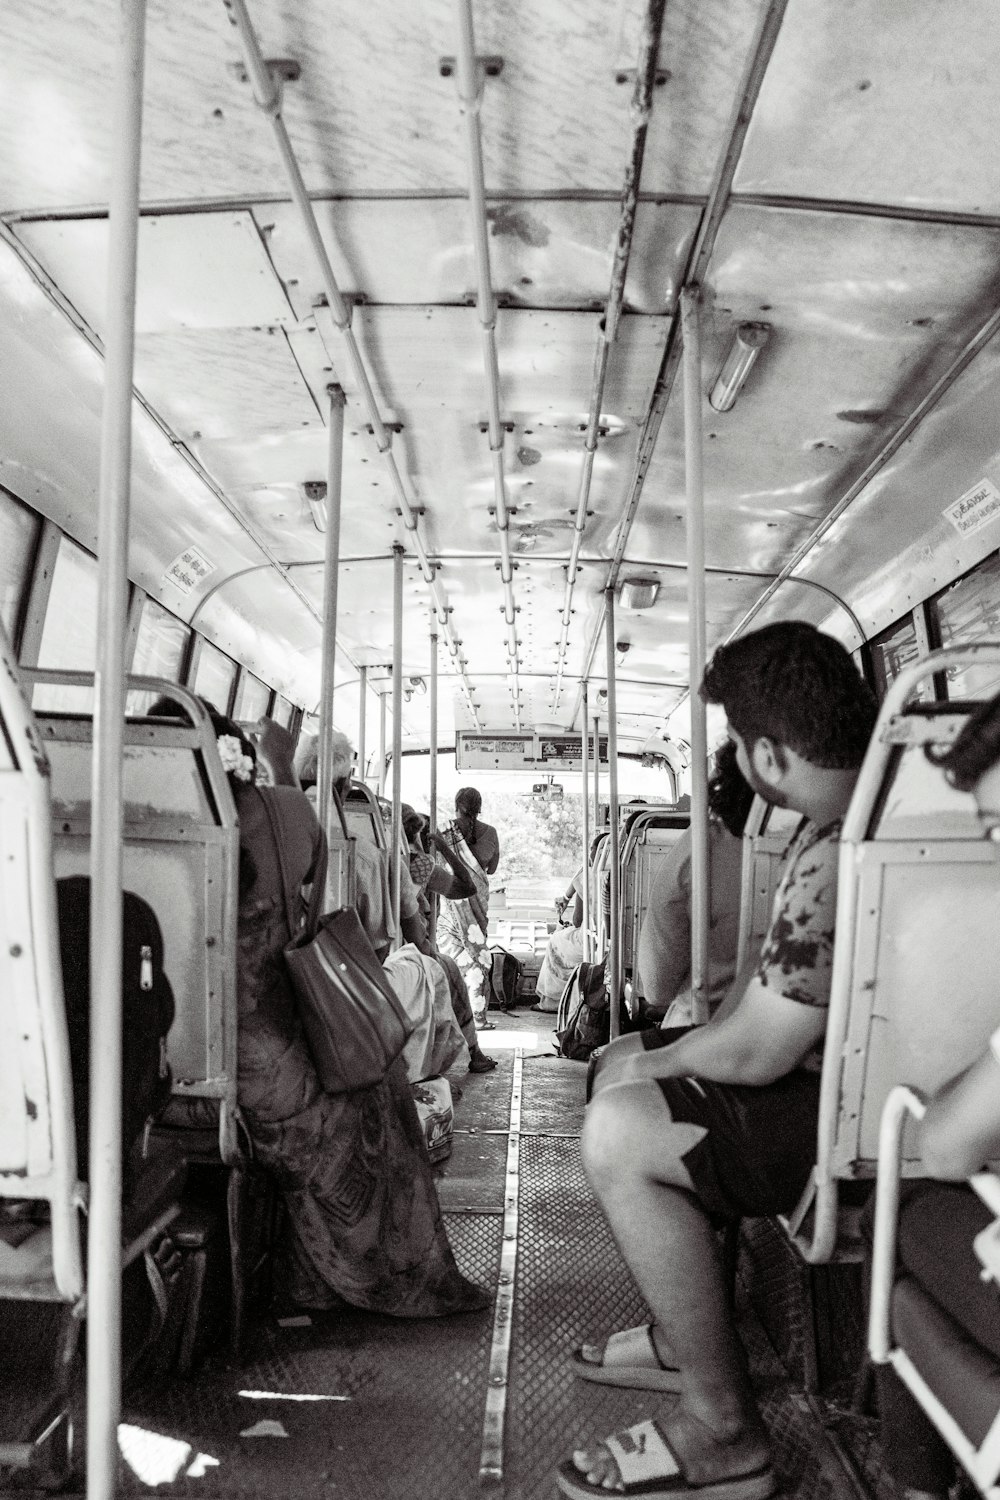 una foto in bianco e nero di persone sedute su un autobus